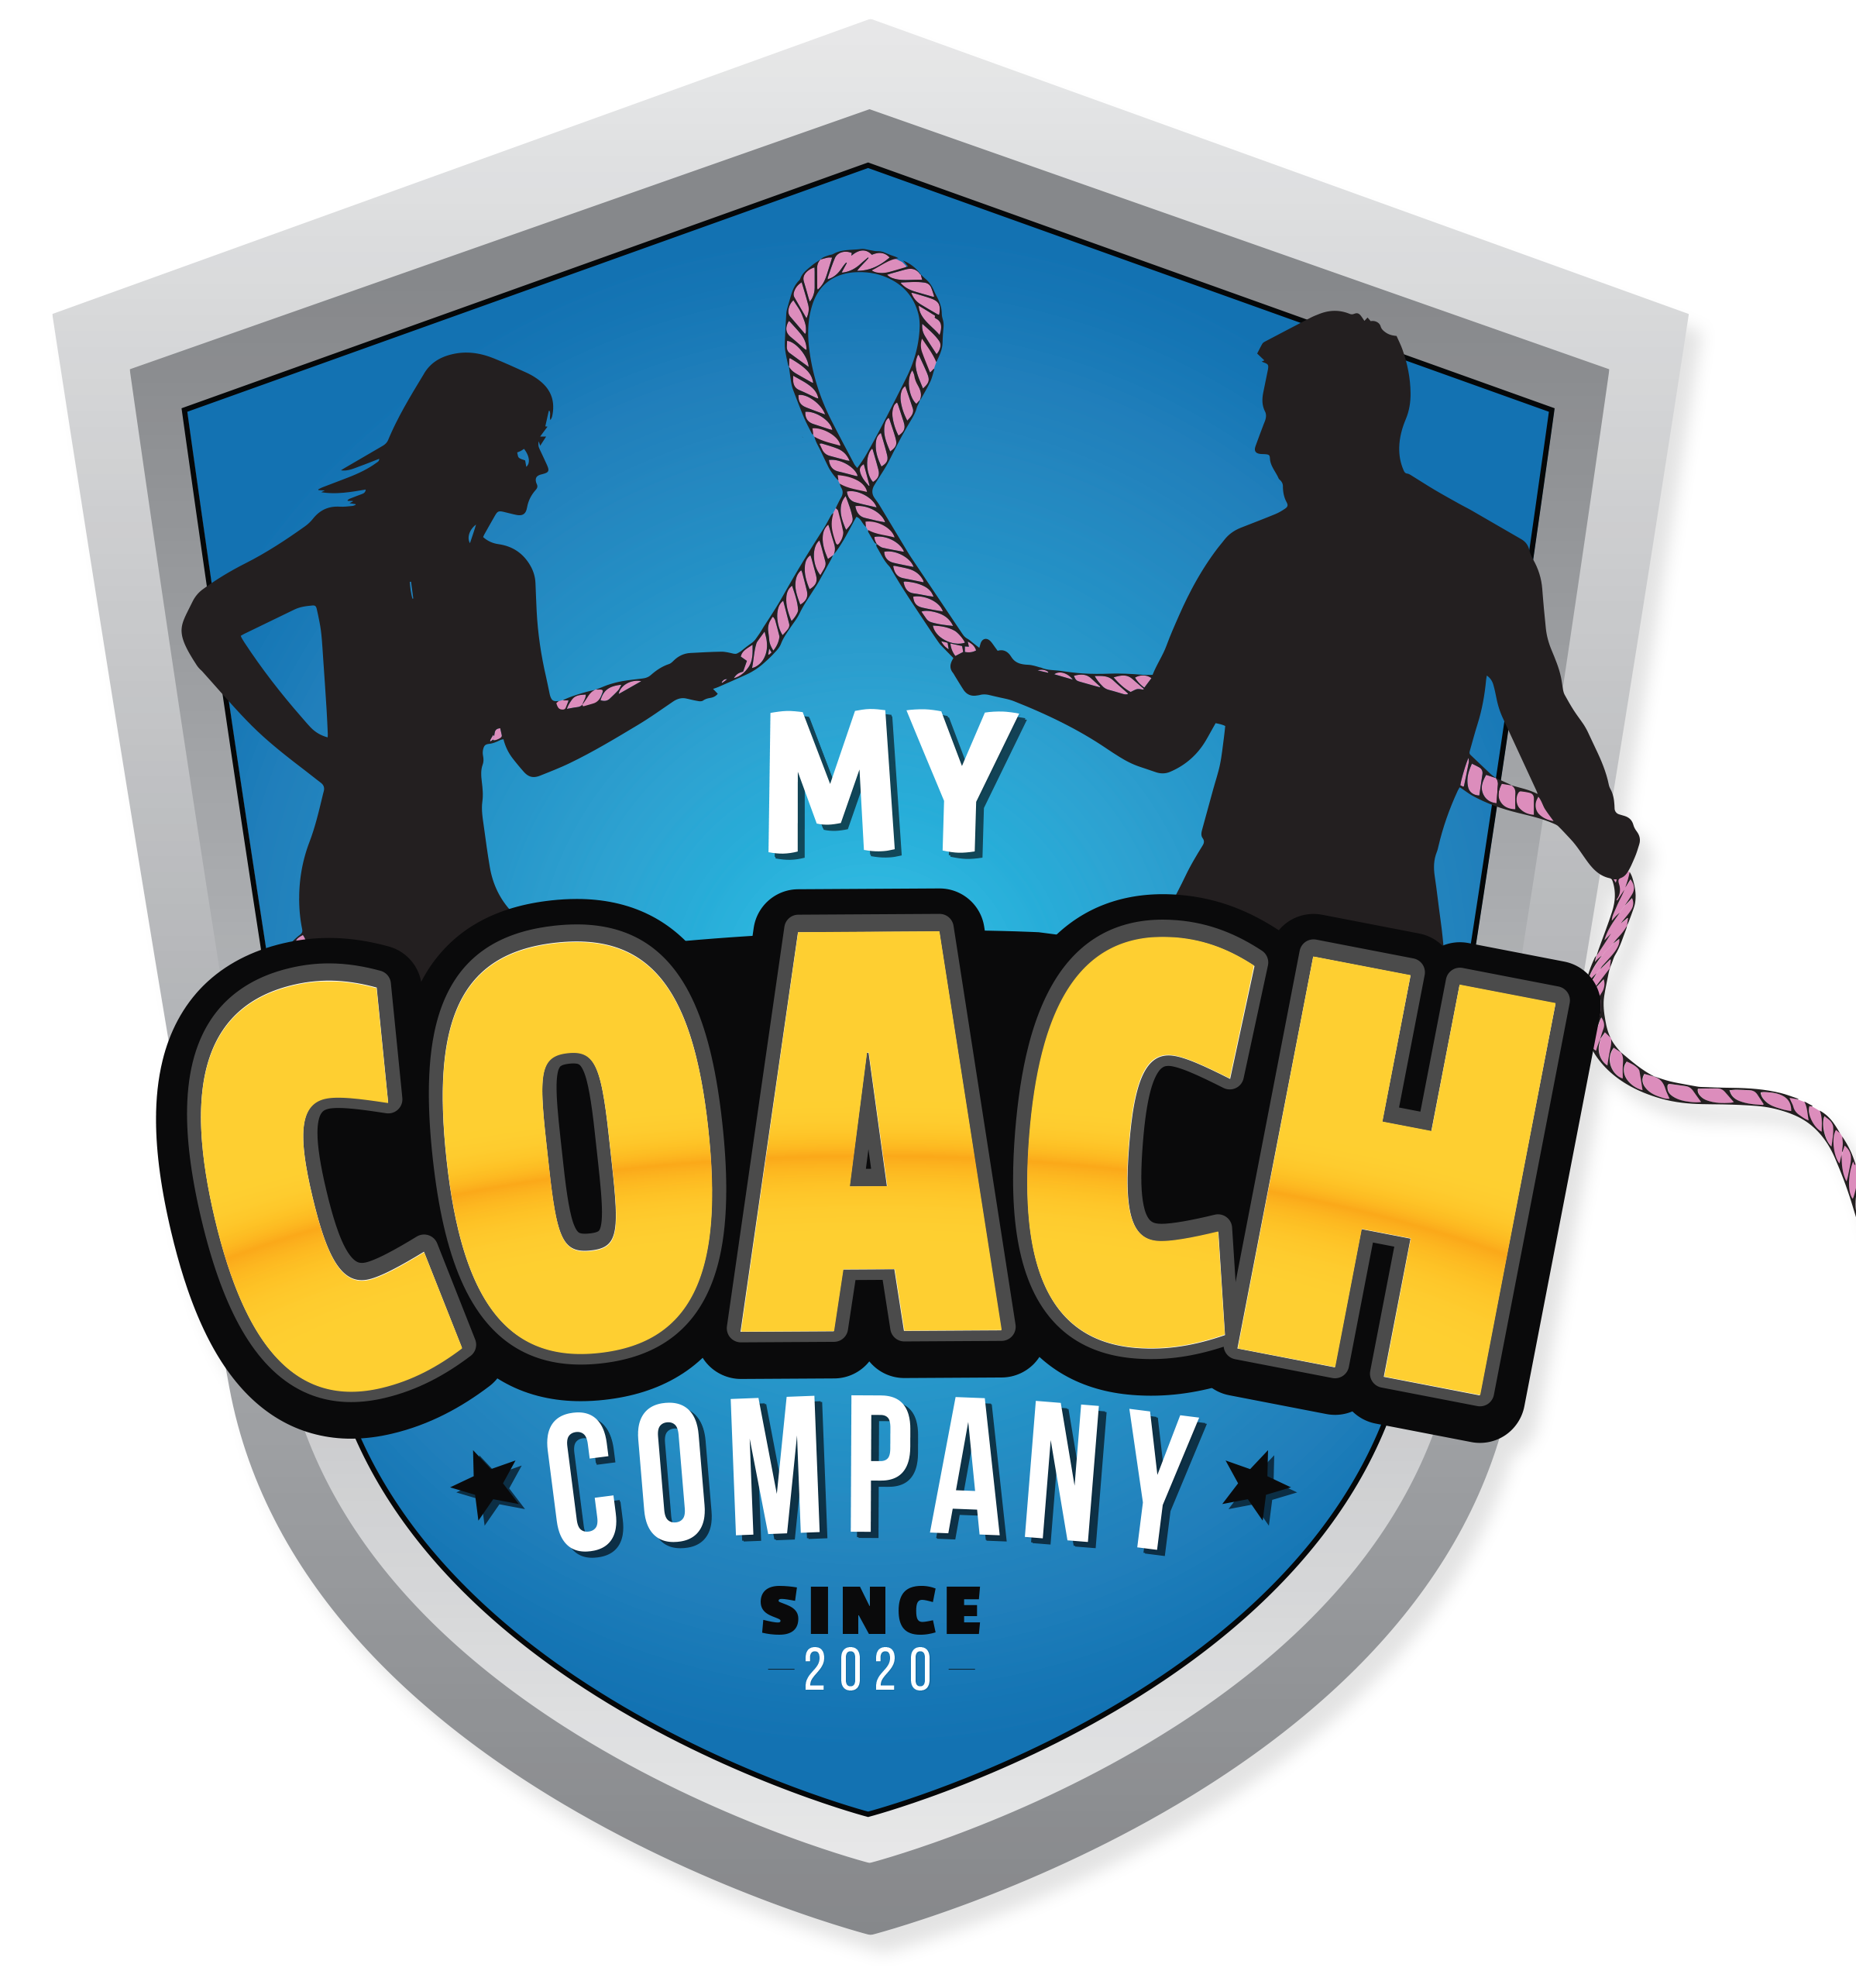 My Coach Company